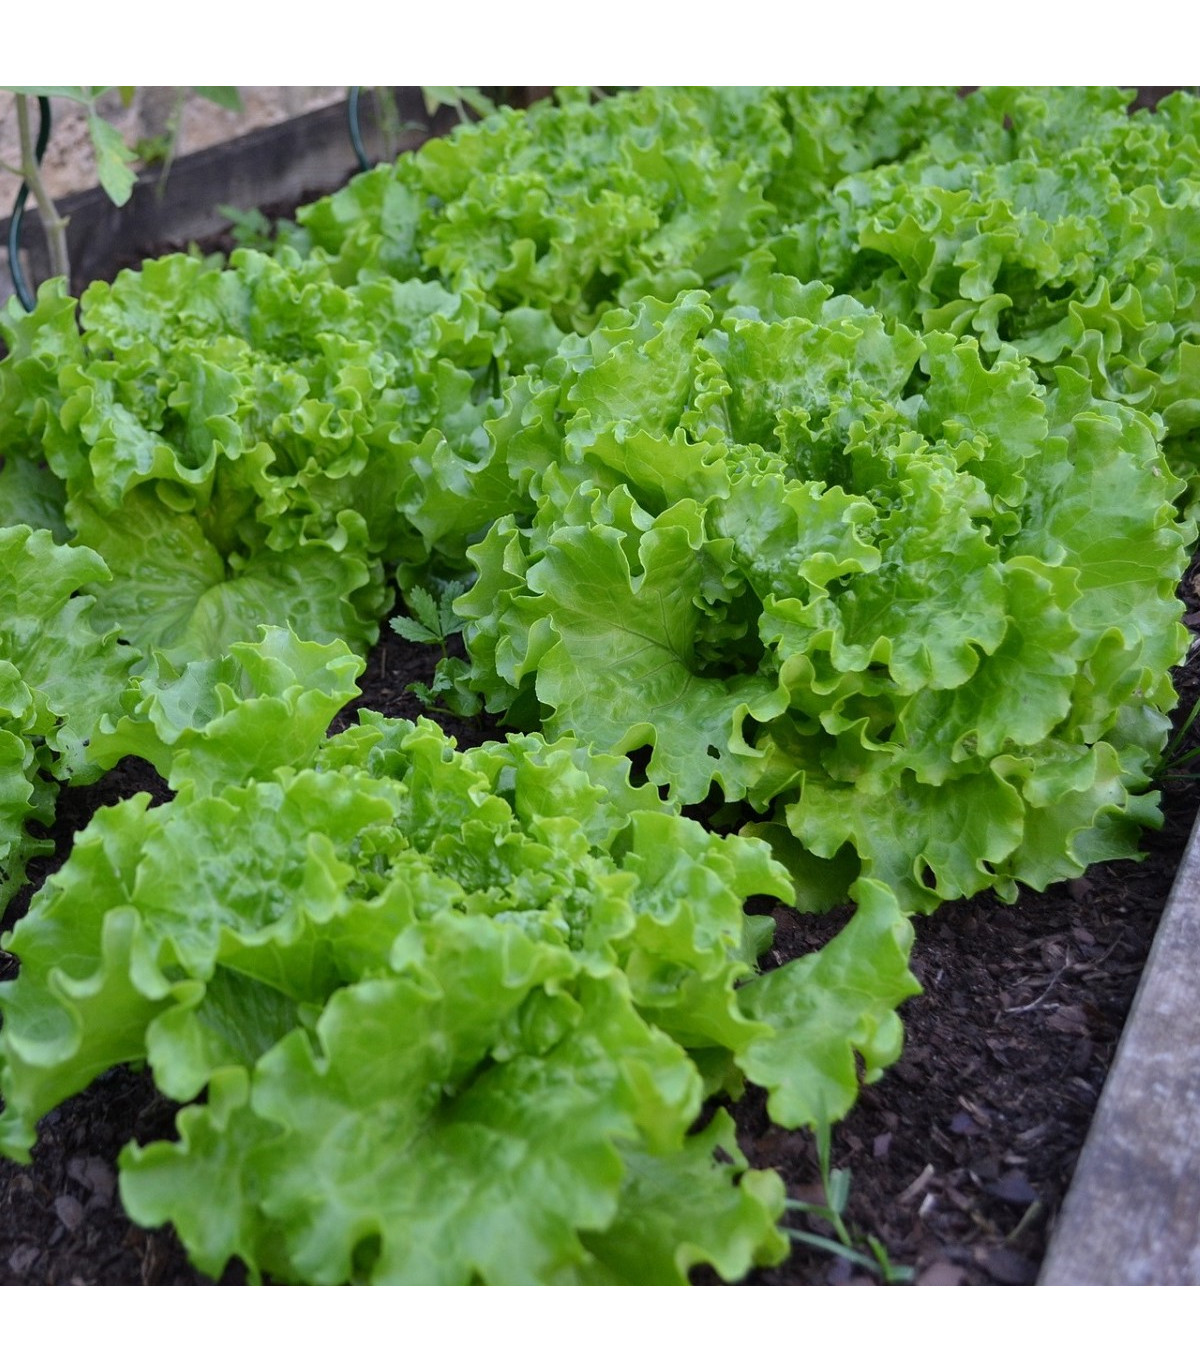 BIO Salát hlávkový Maikönig - Lactuca sativa - bio osivo salátu - 1 g